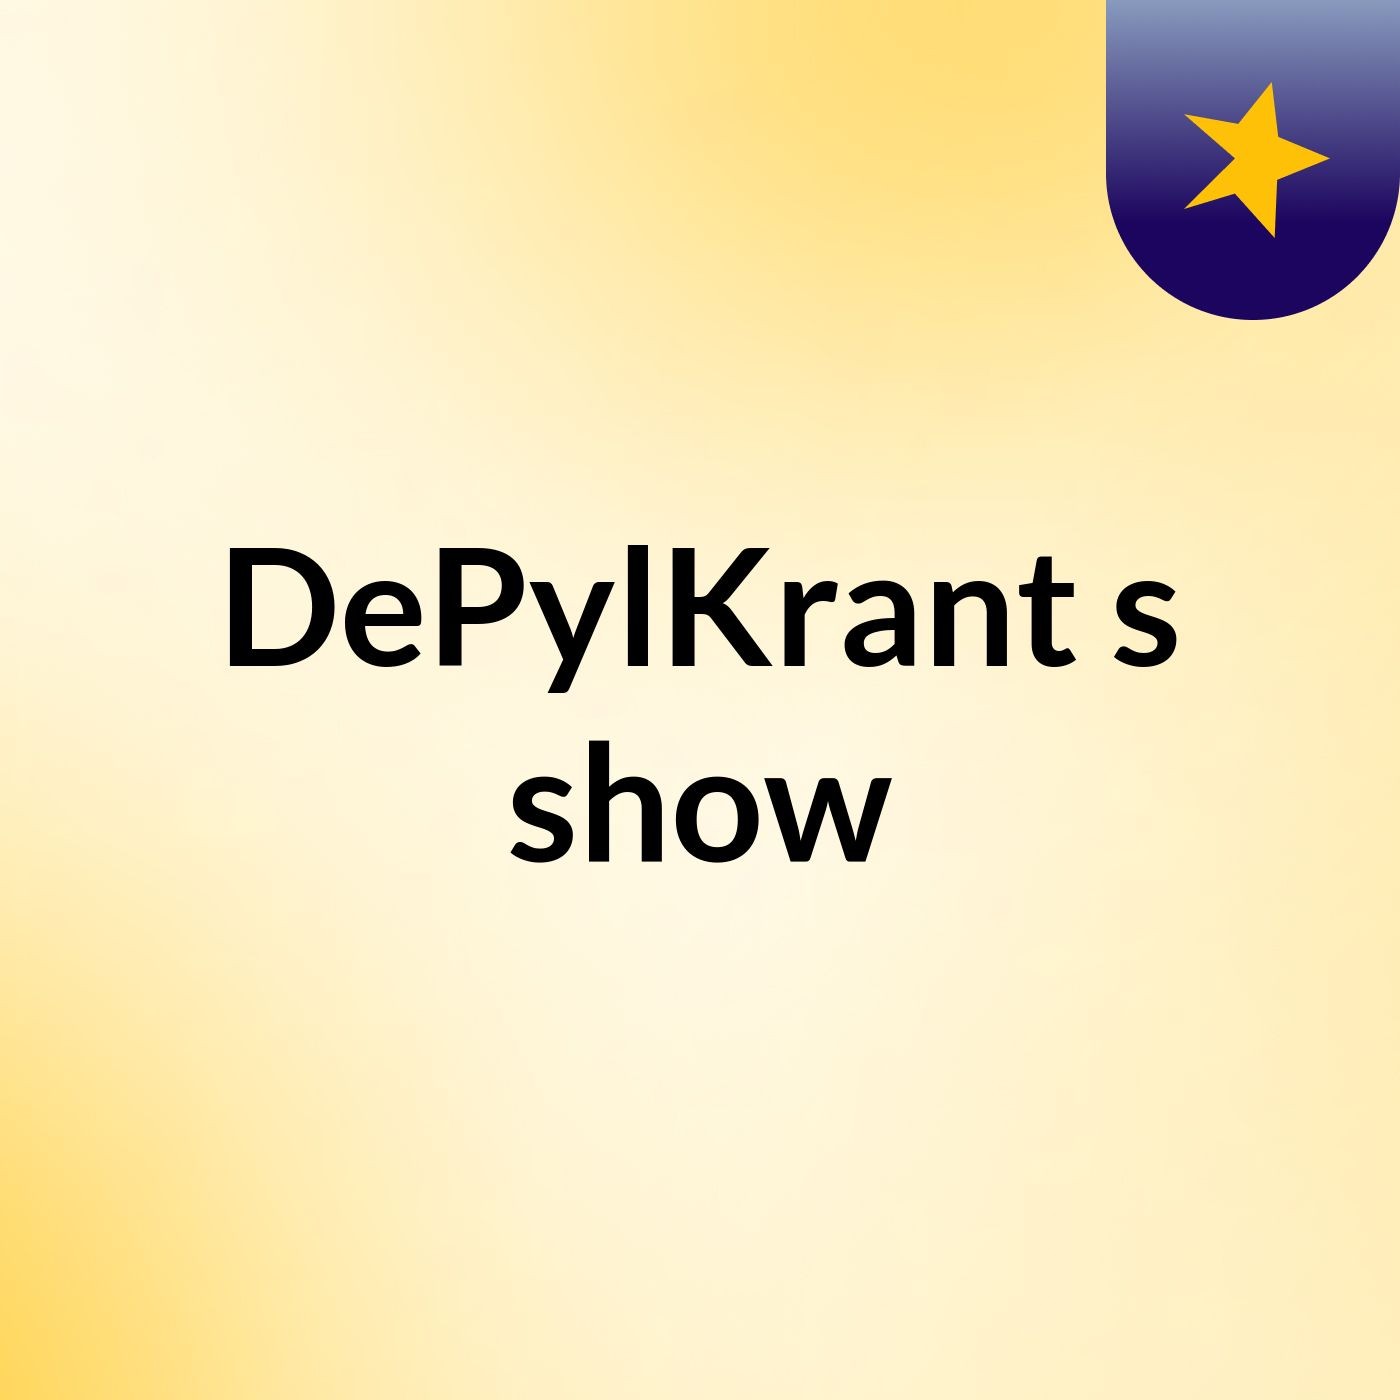 DePylKrant's show